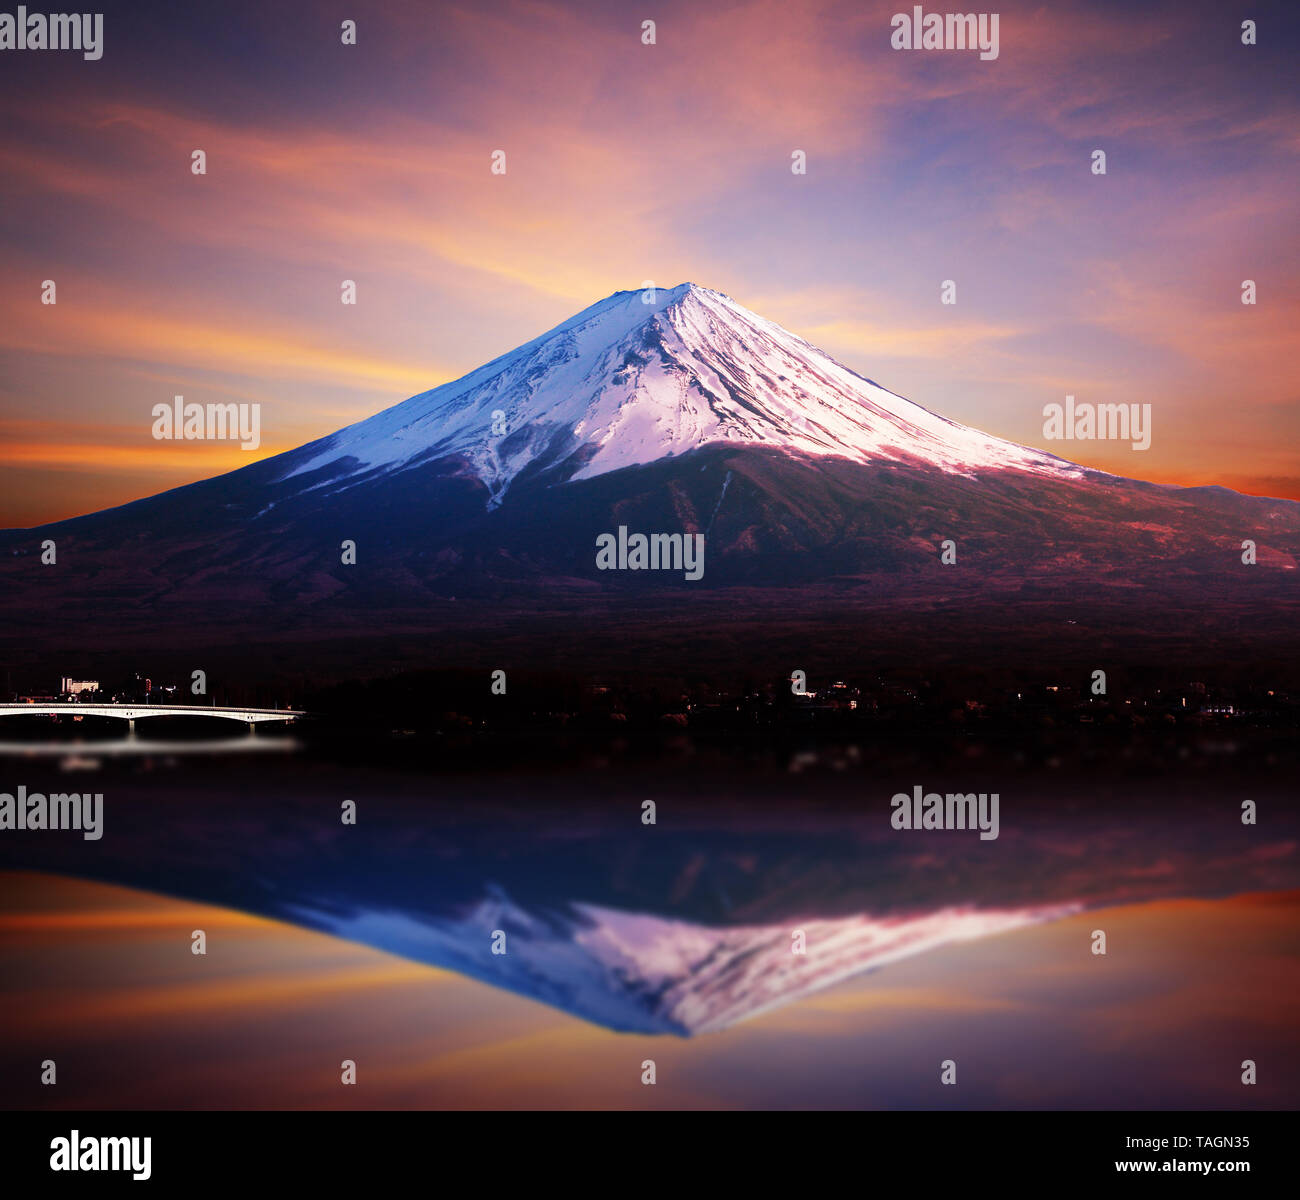 Mount fuji san reflect at Lake kawaguchiko in japan At sunset. Stock Photo